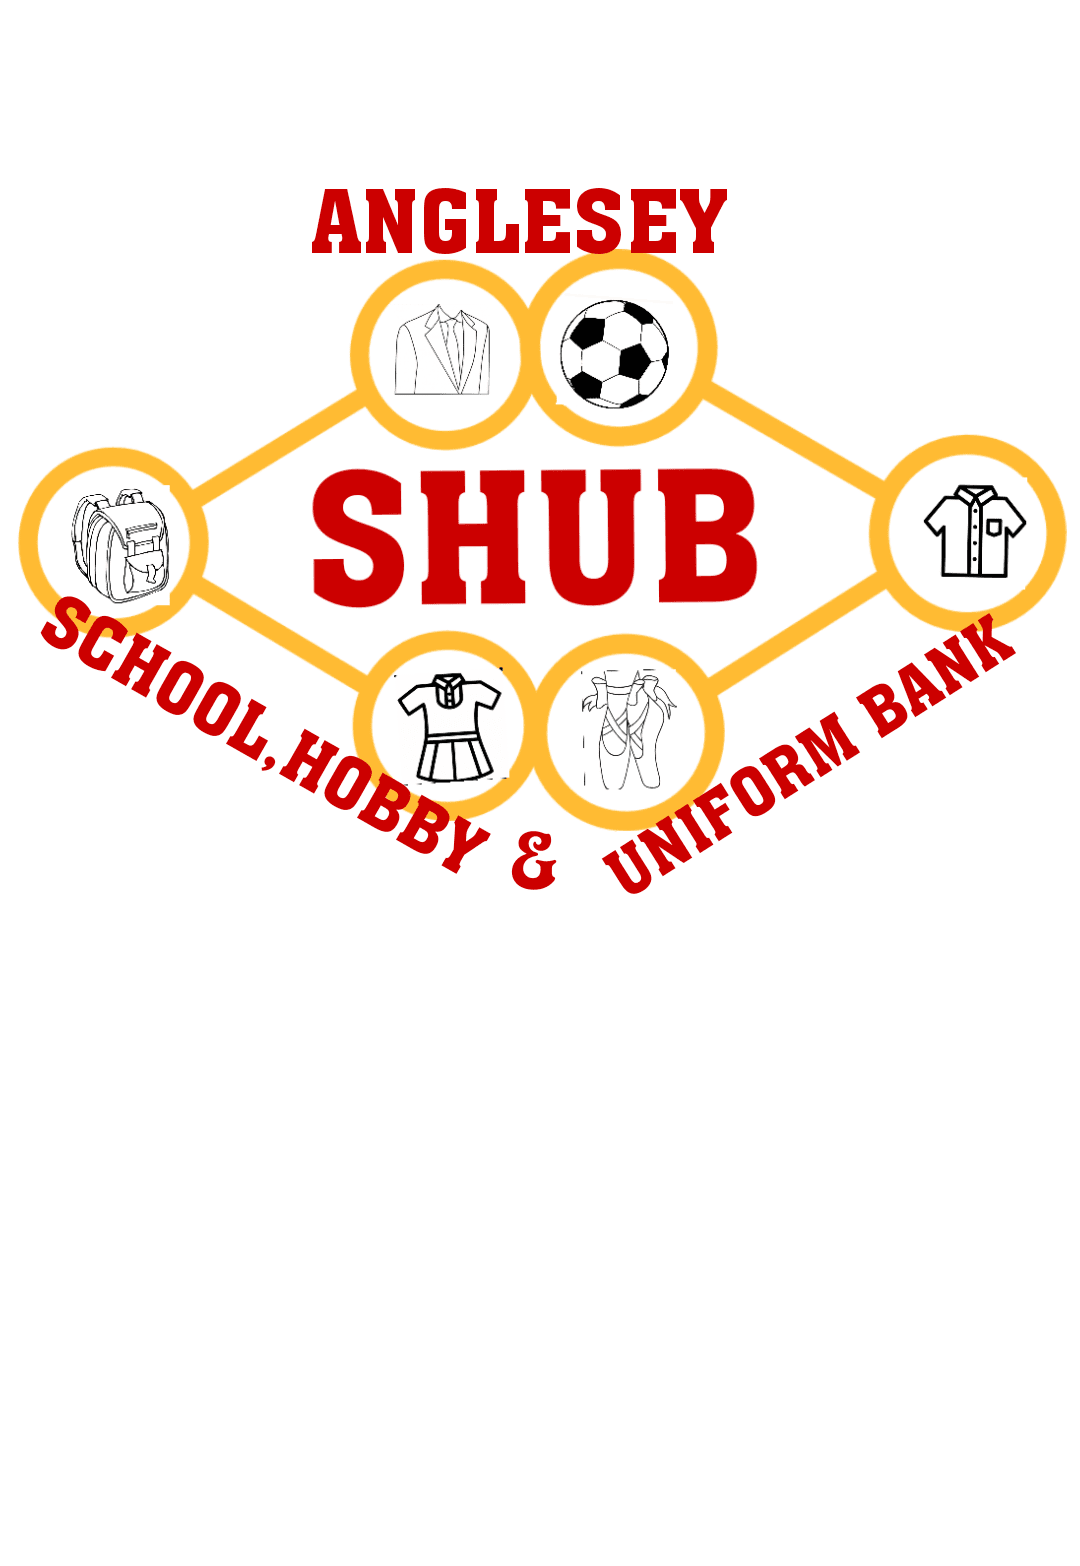 Shub School, Hobby And Uniform Bank, Anglesey